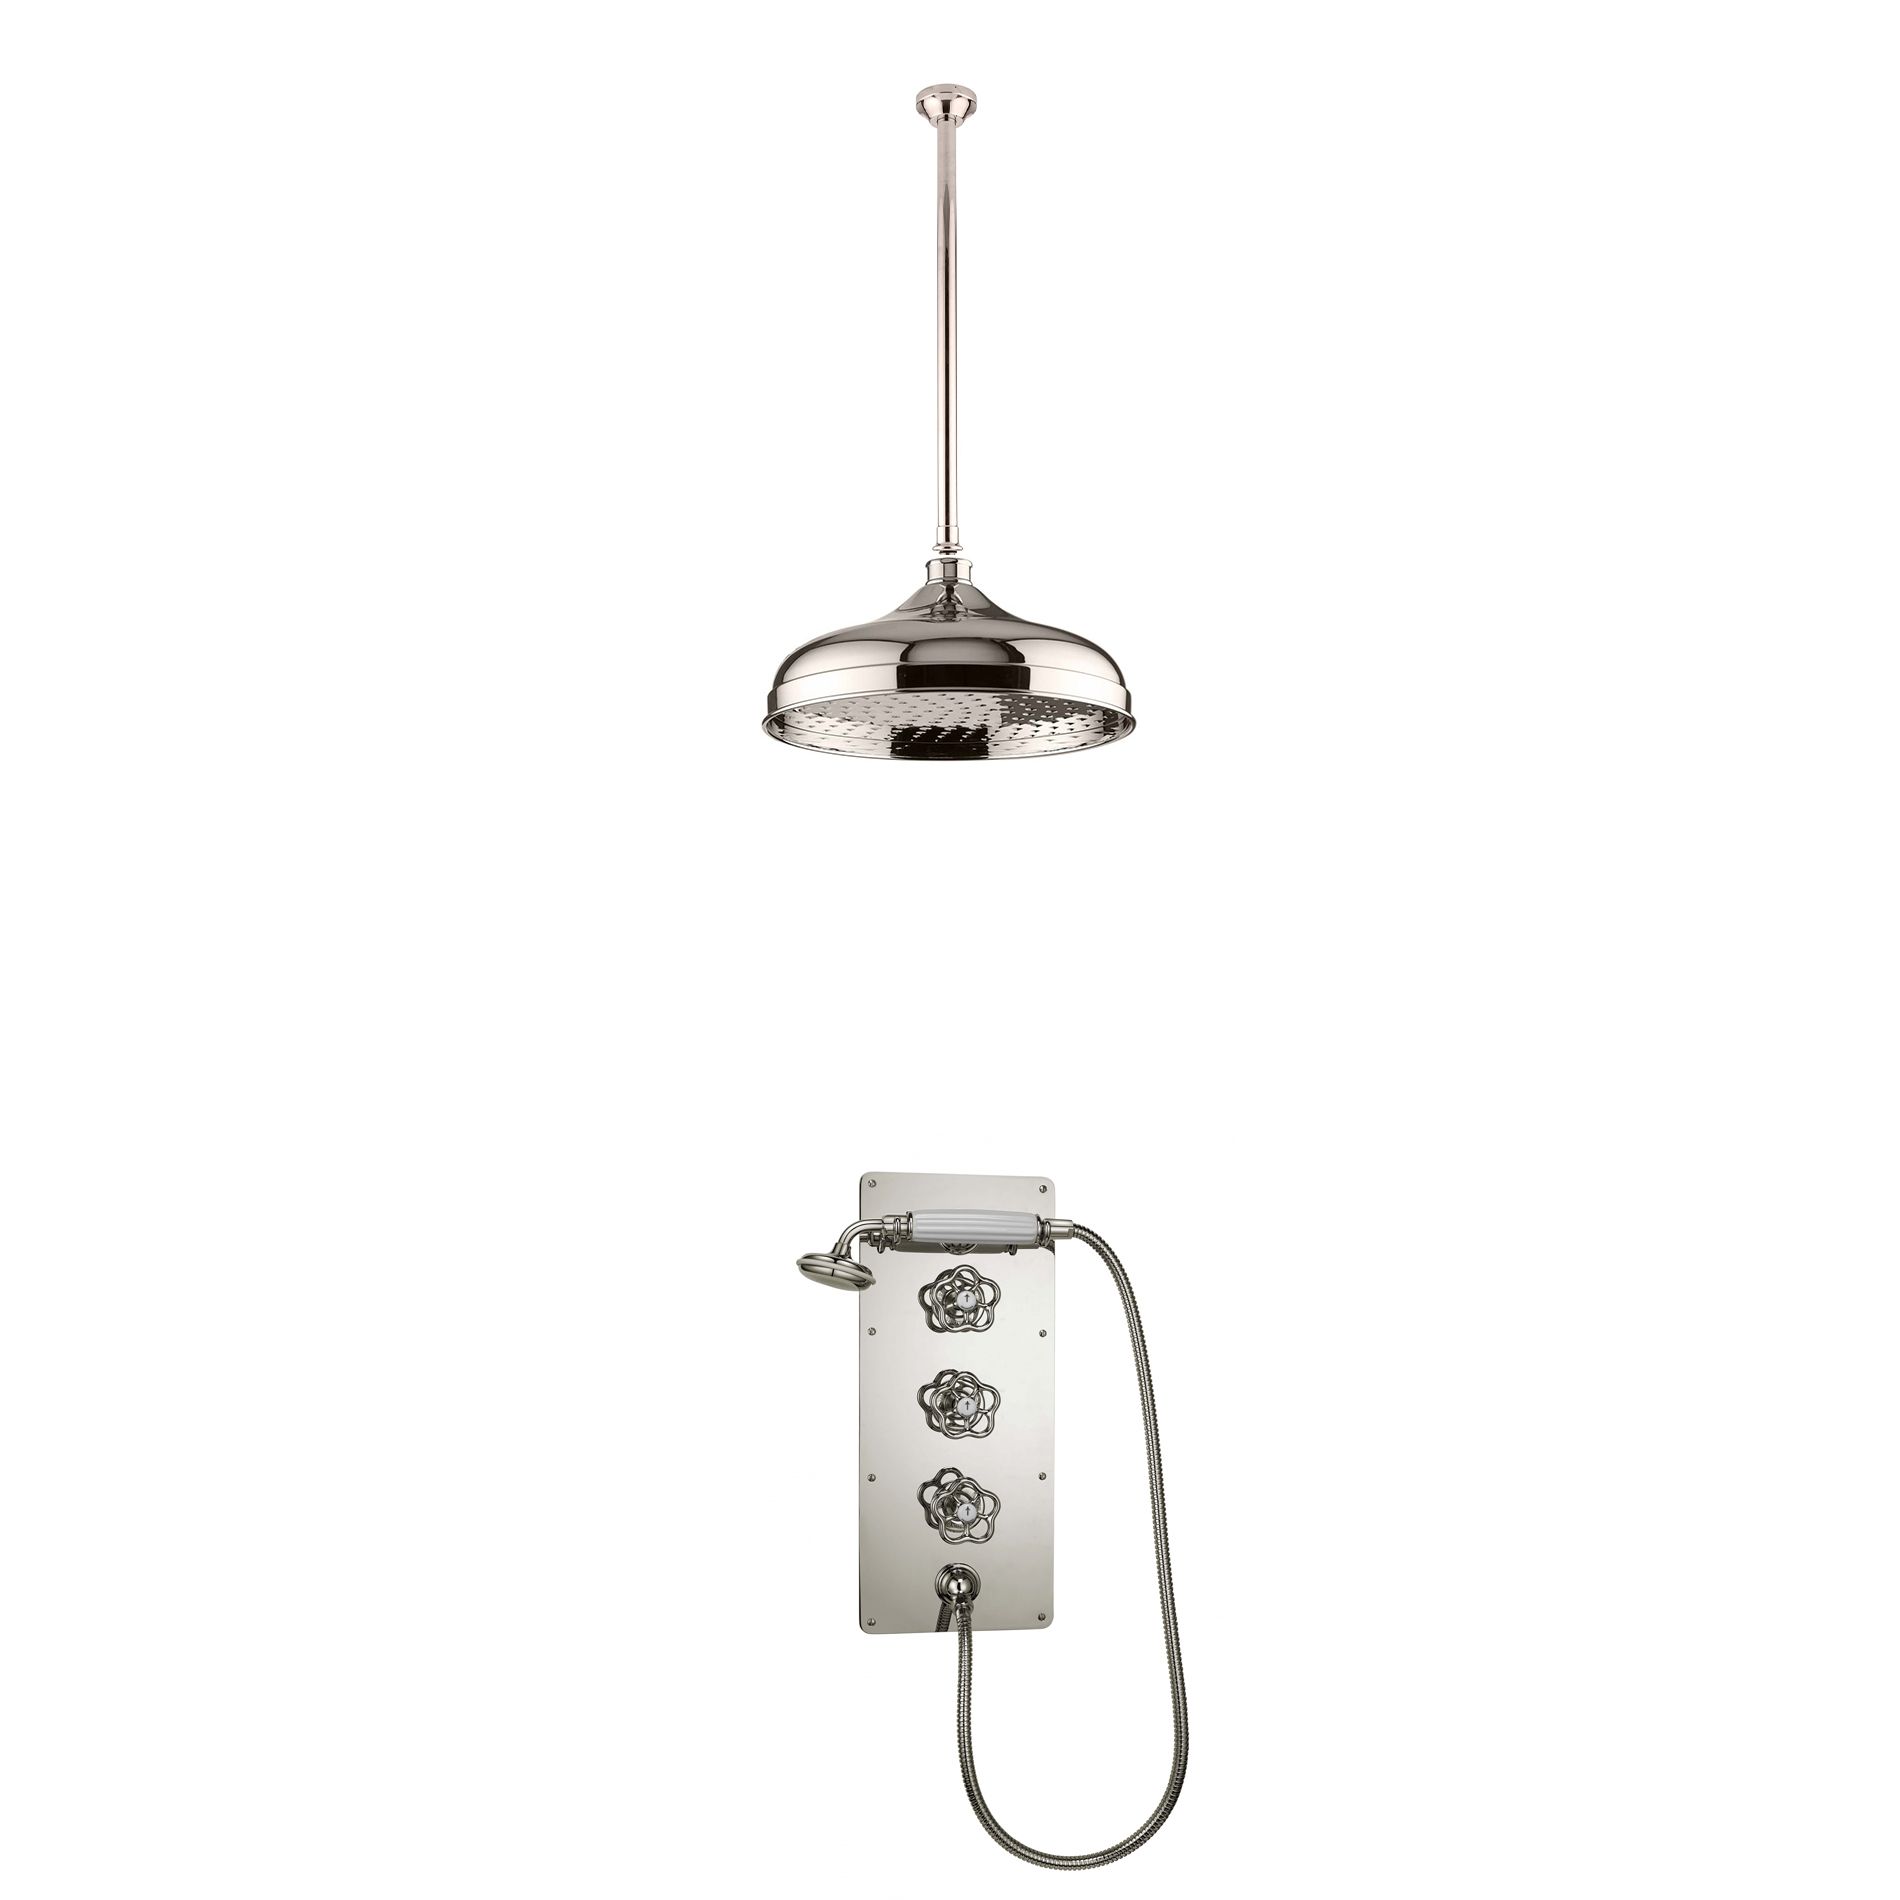  Vòi sen âm trần điều chỉnh nhiệt độ cổ điển bằng đồng, bát sen Ø300mm Drumbi - Shower Ceiling 